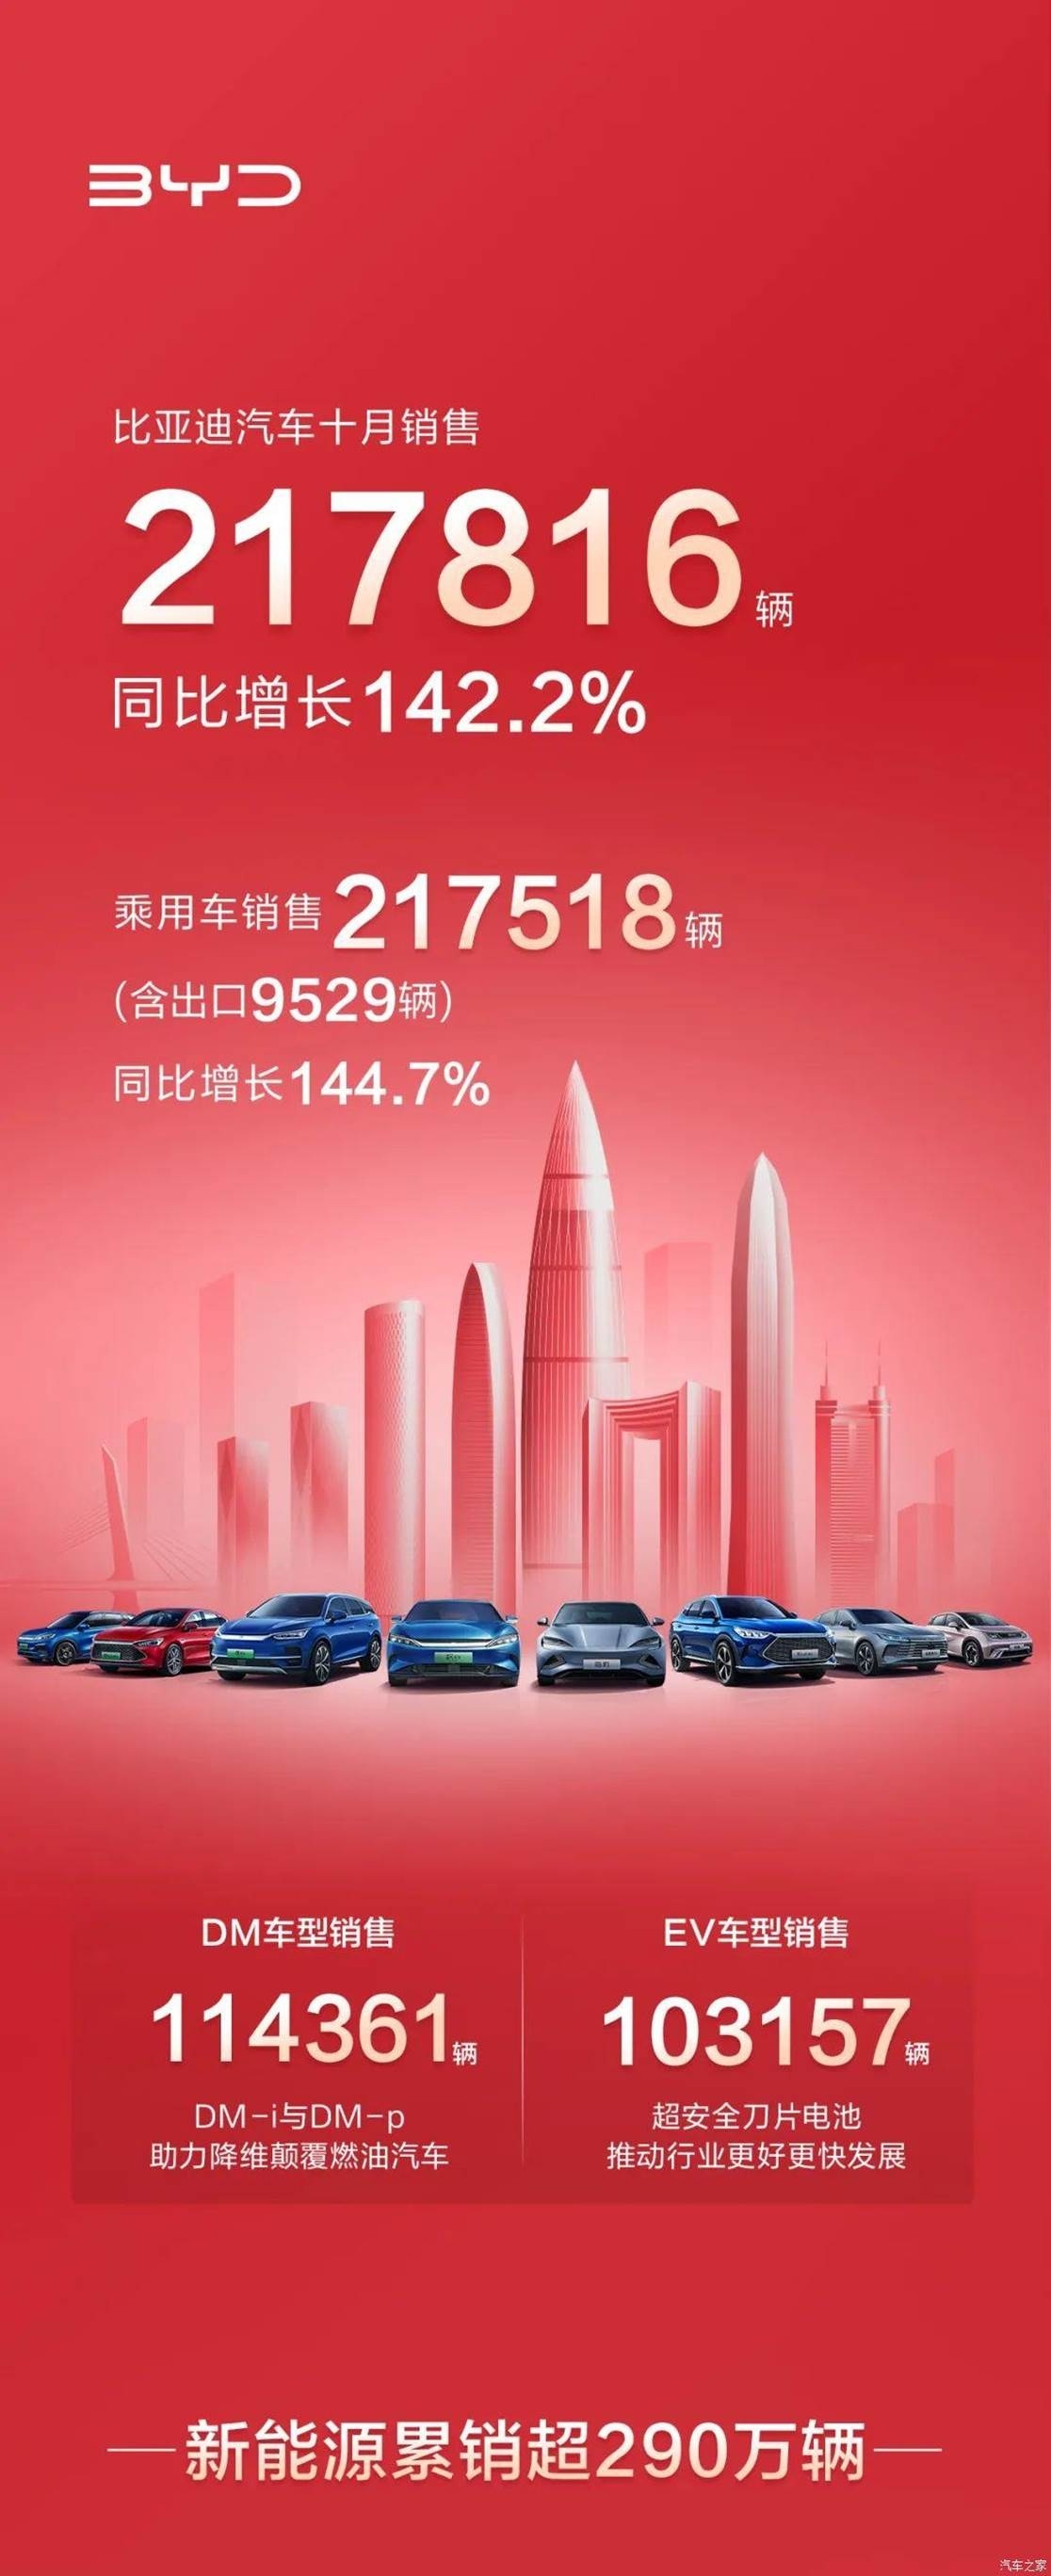 比亚迪10月销售217816辆 同比增142.2%